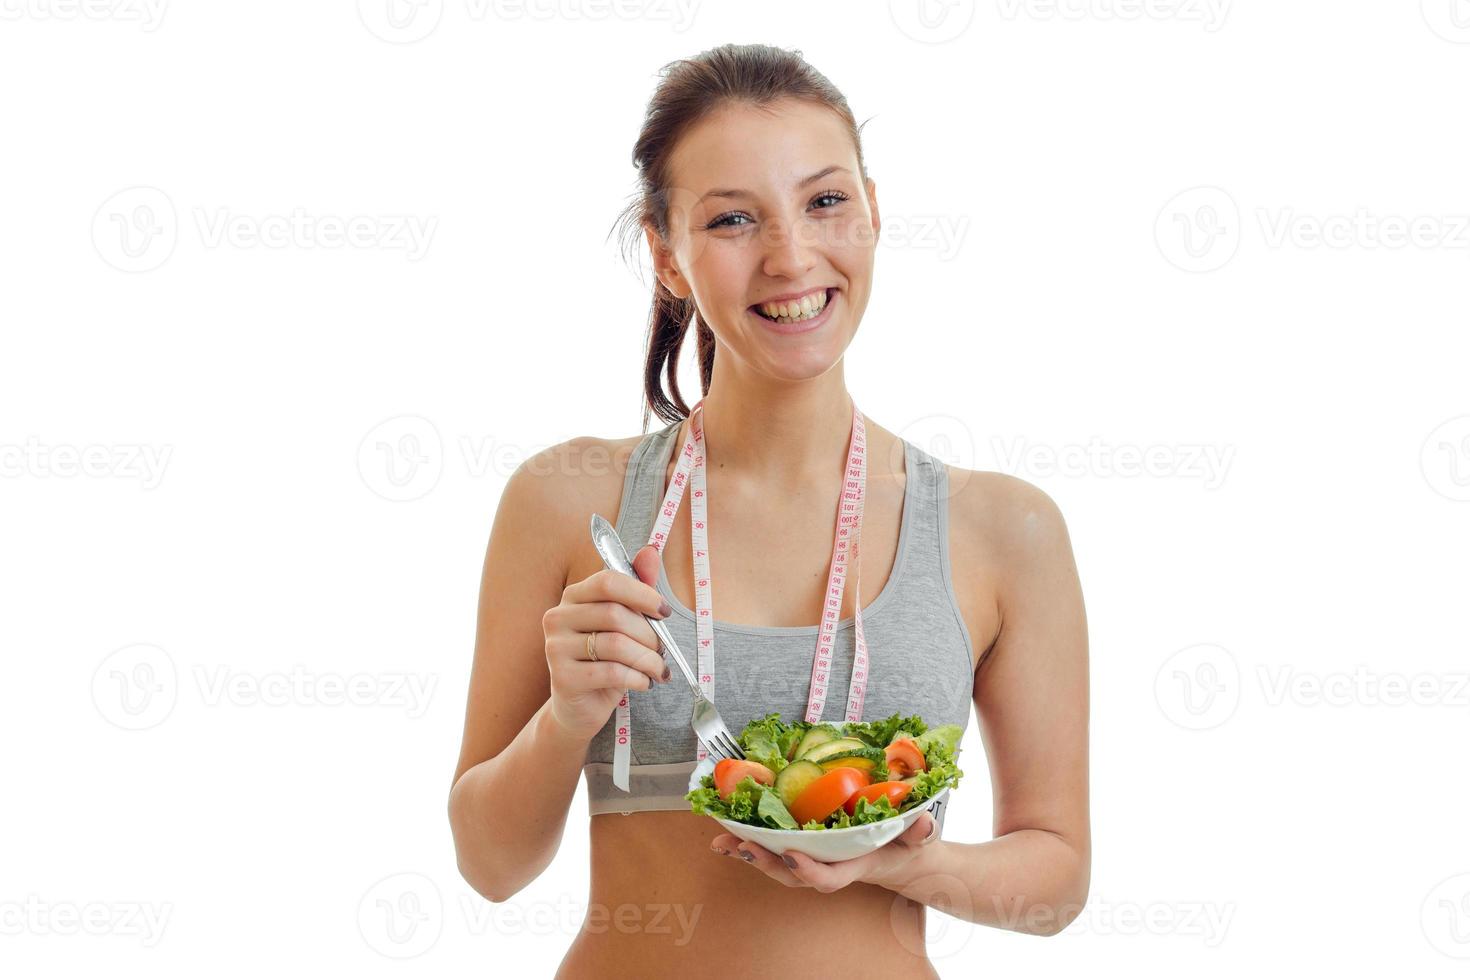 hermosa chica feliz mirando a la cámara, riendo y sosteniendo un plato con ensalada de verduras cerrada foto